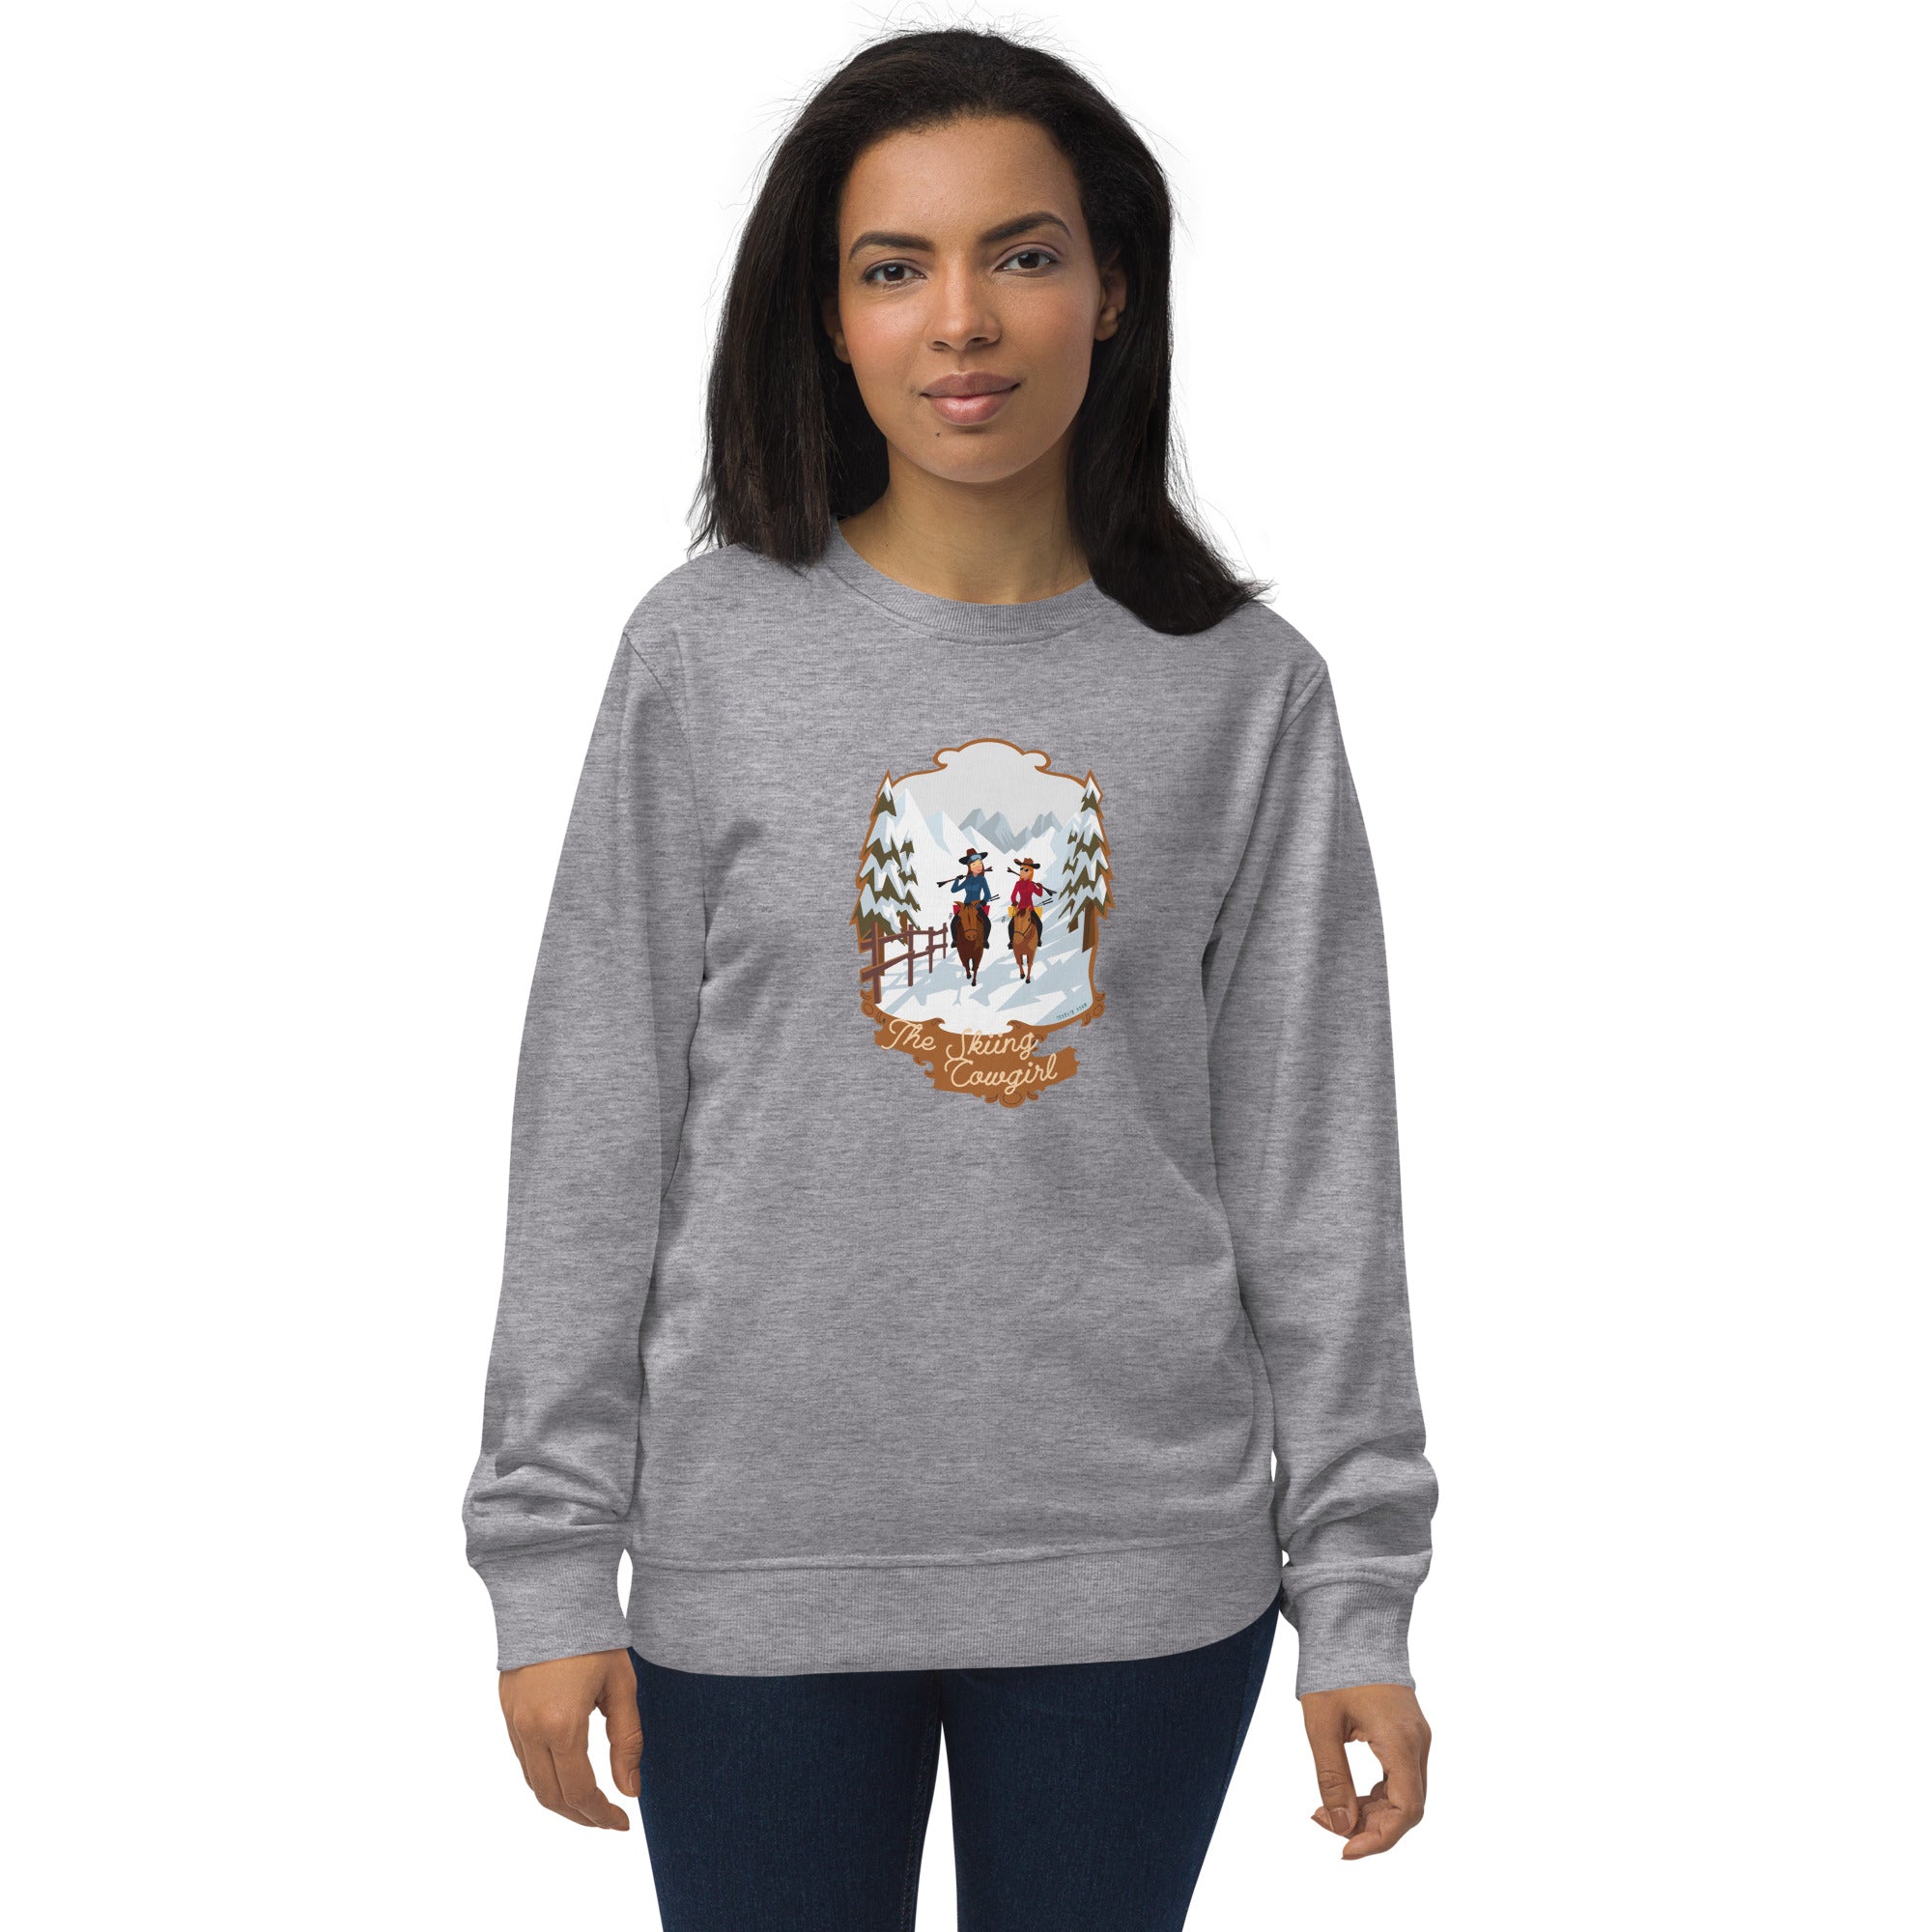 Unisex organic sweatshirt The Skiing Cowgirl